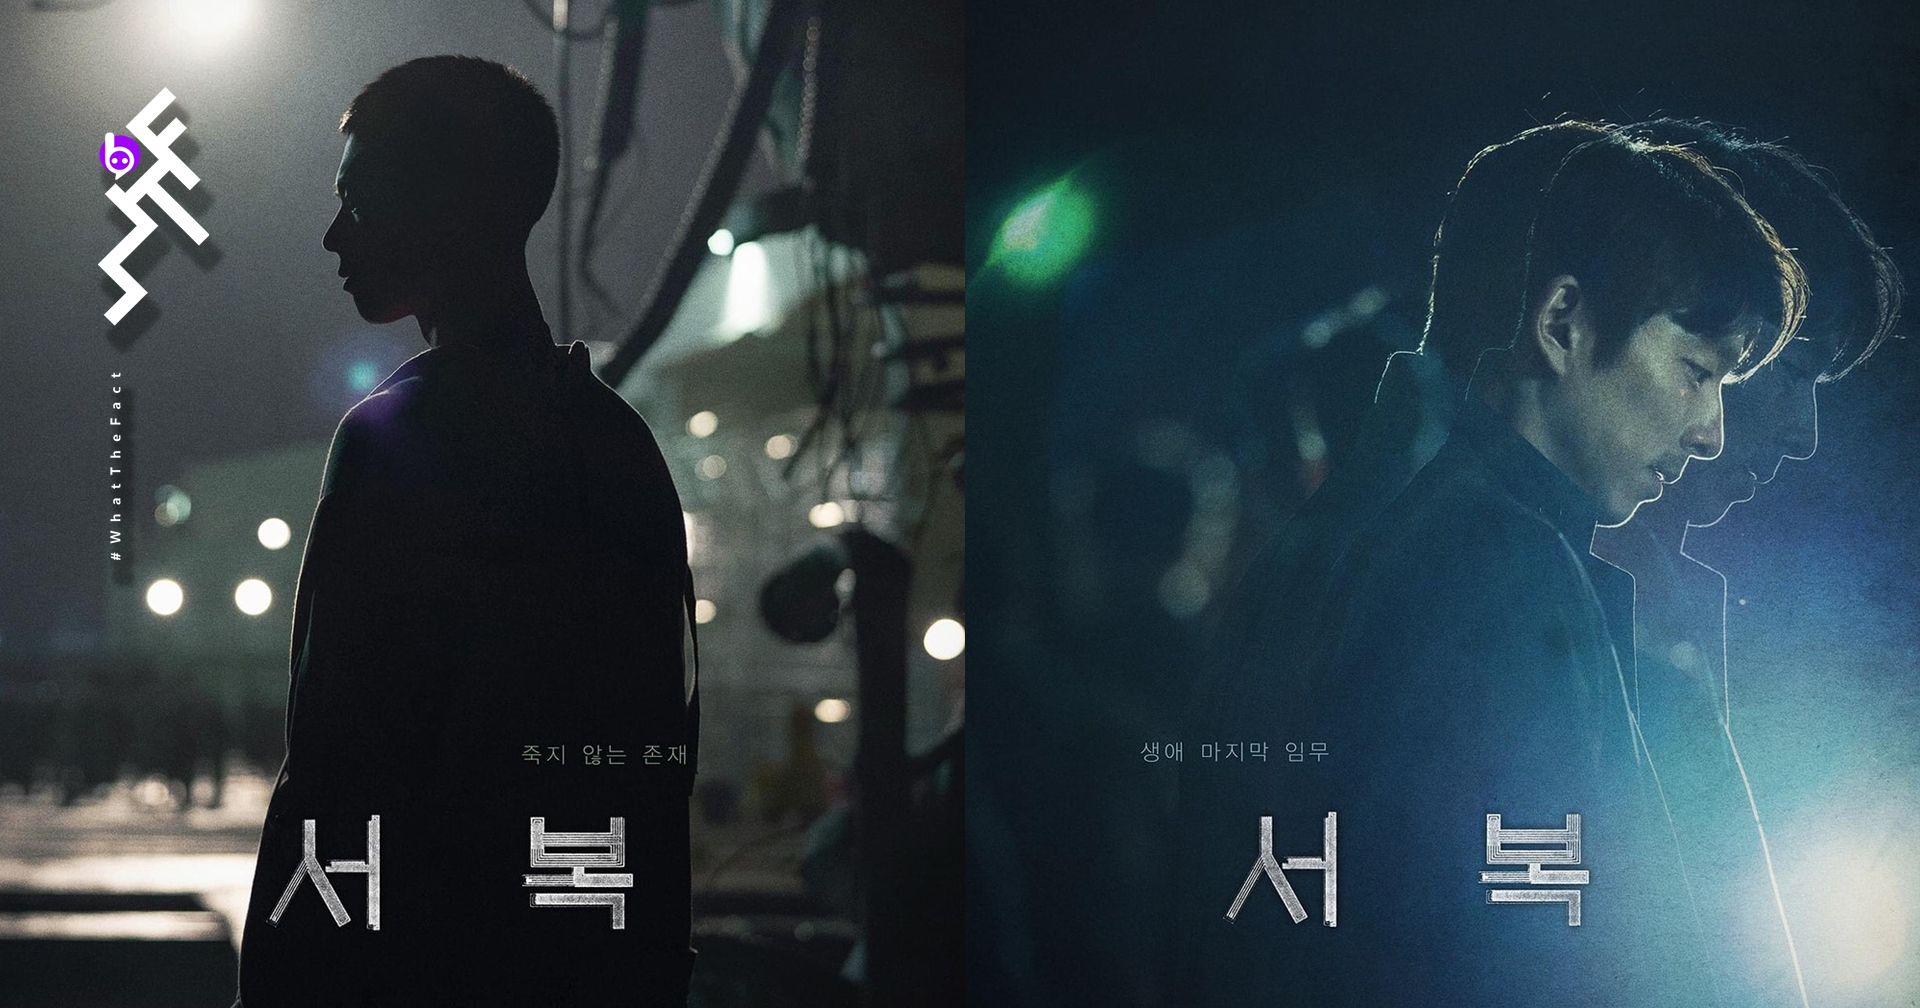 “กงยู” จะปกป้อง “พัคโบกอม” มนุษย์โคลนคนแรกของโลกในหนังแอ็กชันไซไฟ “Seobok”